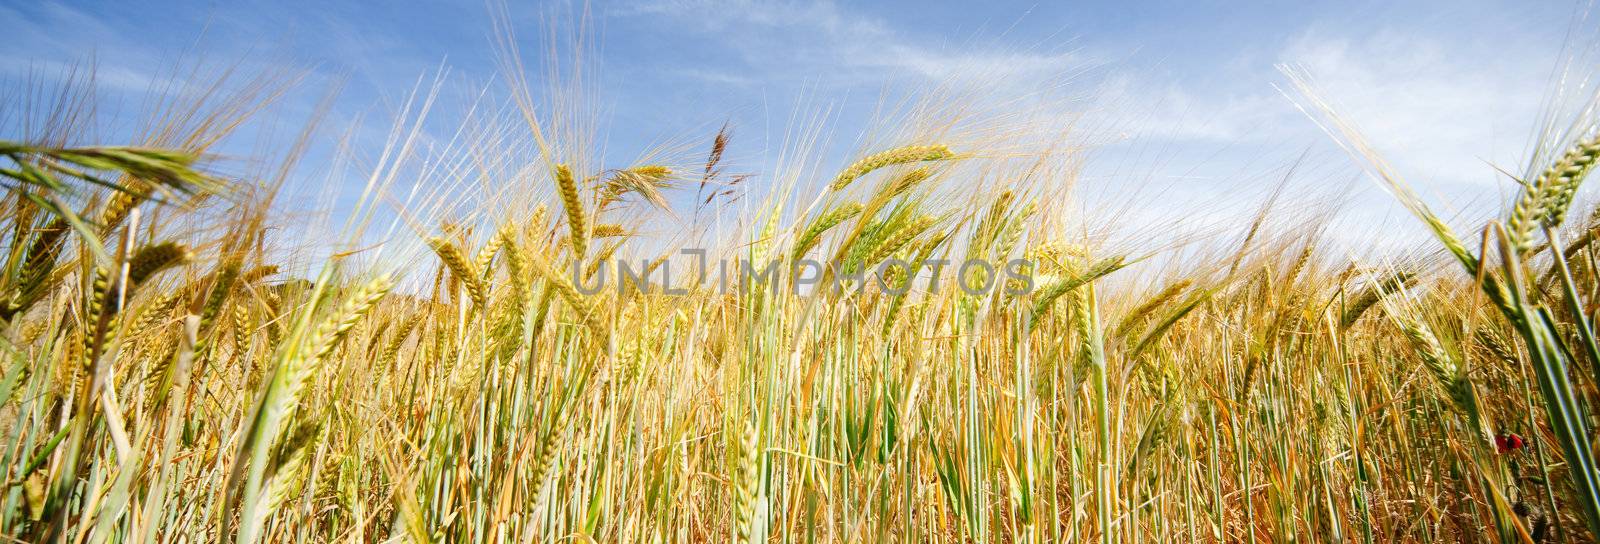 Wheat field by carloscastilla